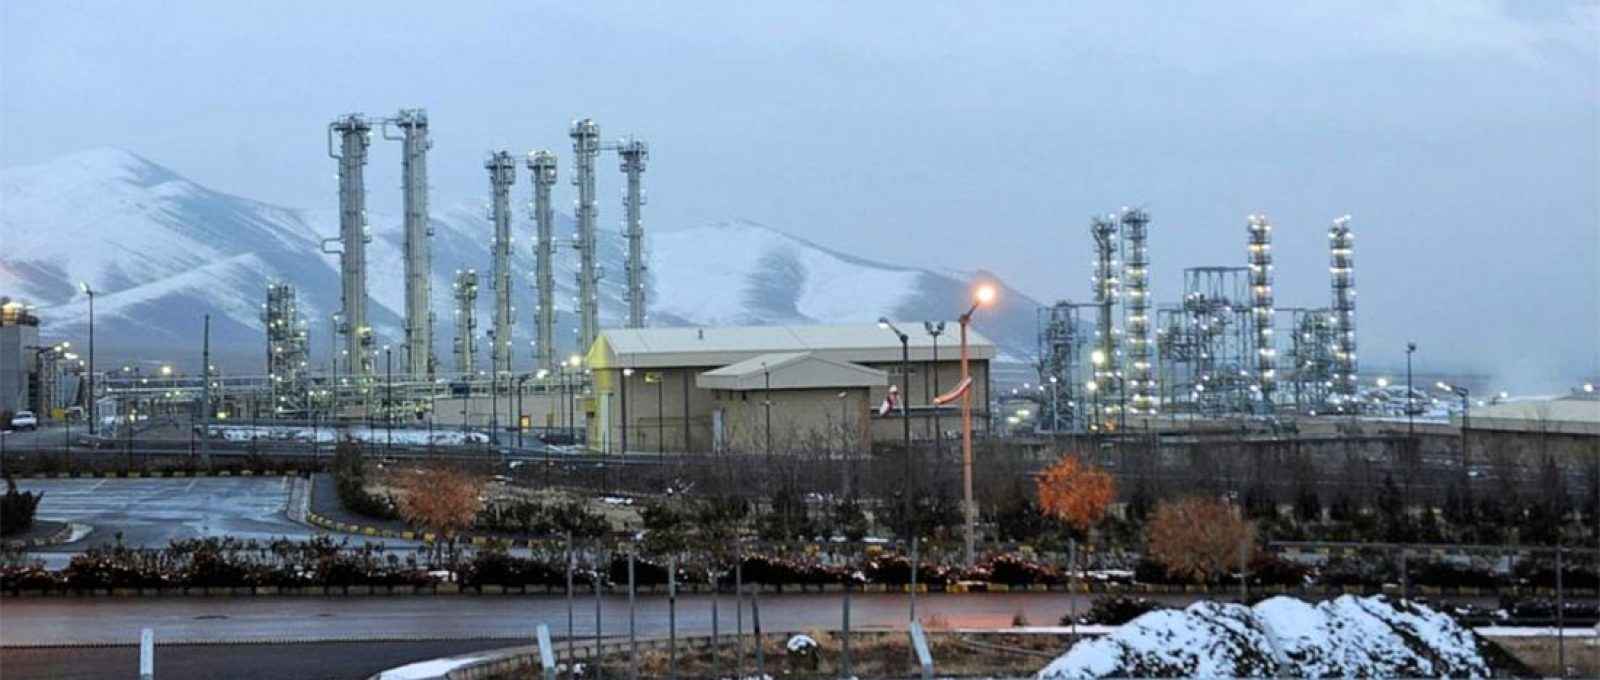 Instalações nucleares de água pesada de Arak, perto de Teerã (Foto: Hamid Foroutan/AP).